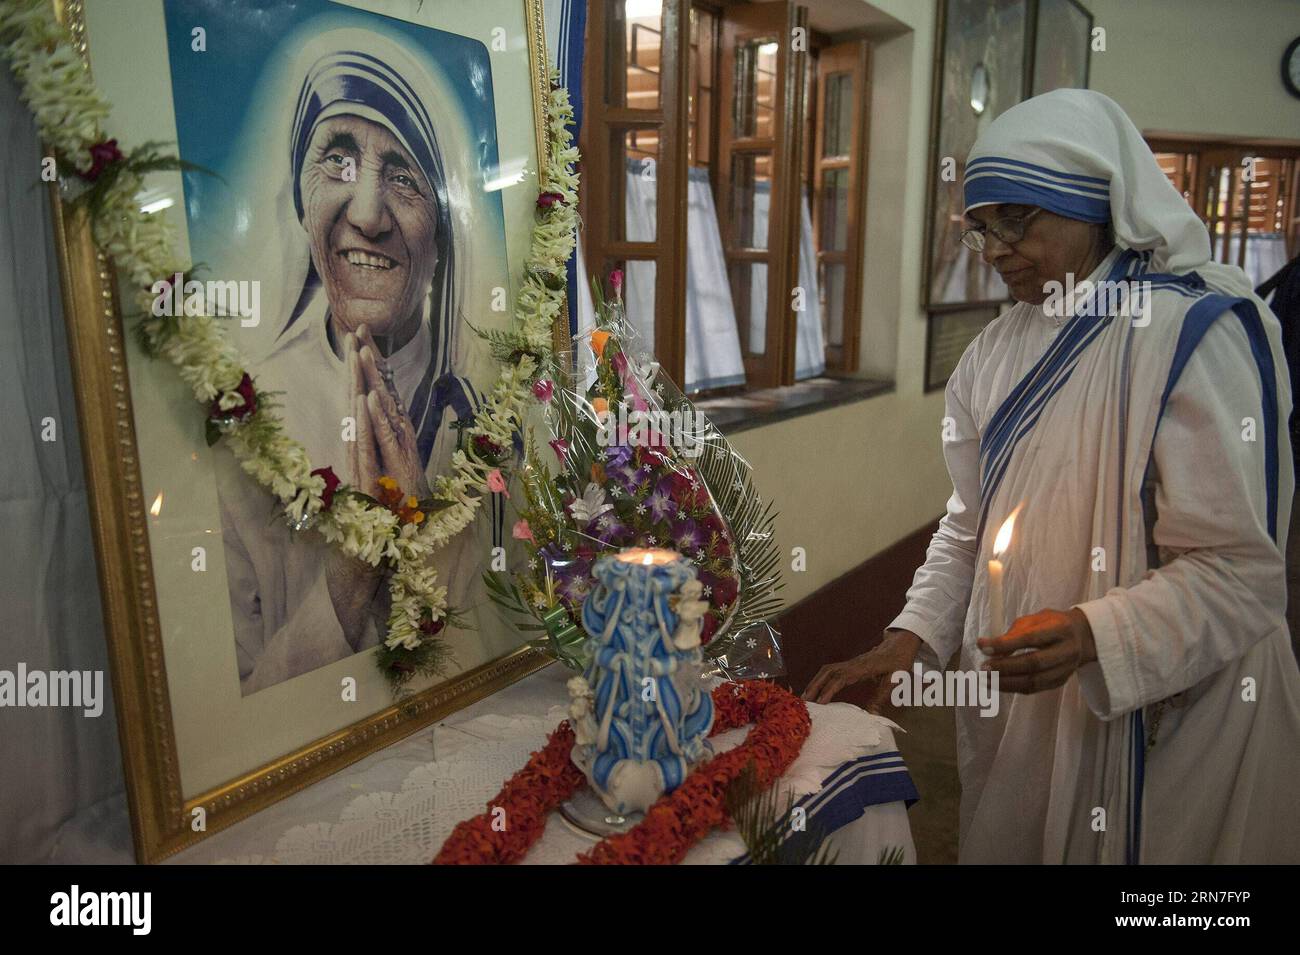 AKTUELLES ZEITGESCHEHEN Gedenken an Mutter Teresa in Indien (150905) -- KOLKATA, 5. September 2015 -- Eine Nonne der Missionare der Nächstenliebe betet während einer Gedenkfeier zum 18. Todestag von Mutter Teresa in Kalkutta, Hauptstadt eines ostindischen Bundesstaates Westbengalen, 5. September 2015. Die Friedensnobelpreisträgerin Mutter Teresa starb am 5. September 1997. ) INDIEN-KOLKATA-MUTTER TERESA-TOD JAHRESTAG TumpaxMondal PUBLICATIONxNOTxINxCHN Nachrichten aktuelle Ereignisse Erinnerung an Mutter Teresa in Indien 150905 Kolkata 5. September 2015 ein jetzt der Missionare der Liebe betet während einer Gedenkfeier zum Th Stockfoto